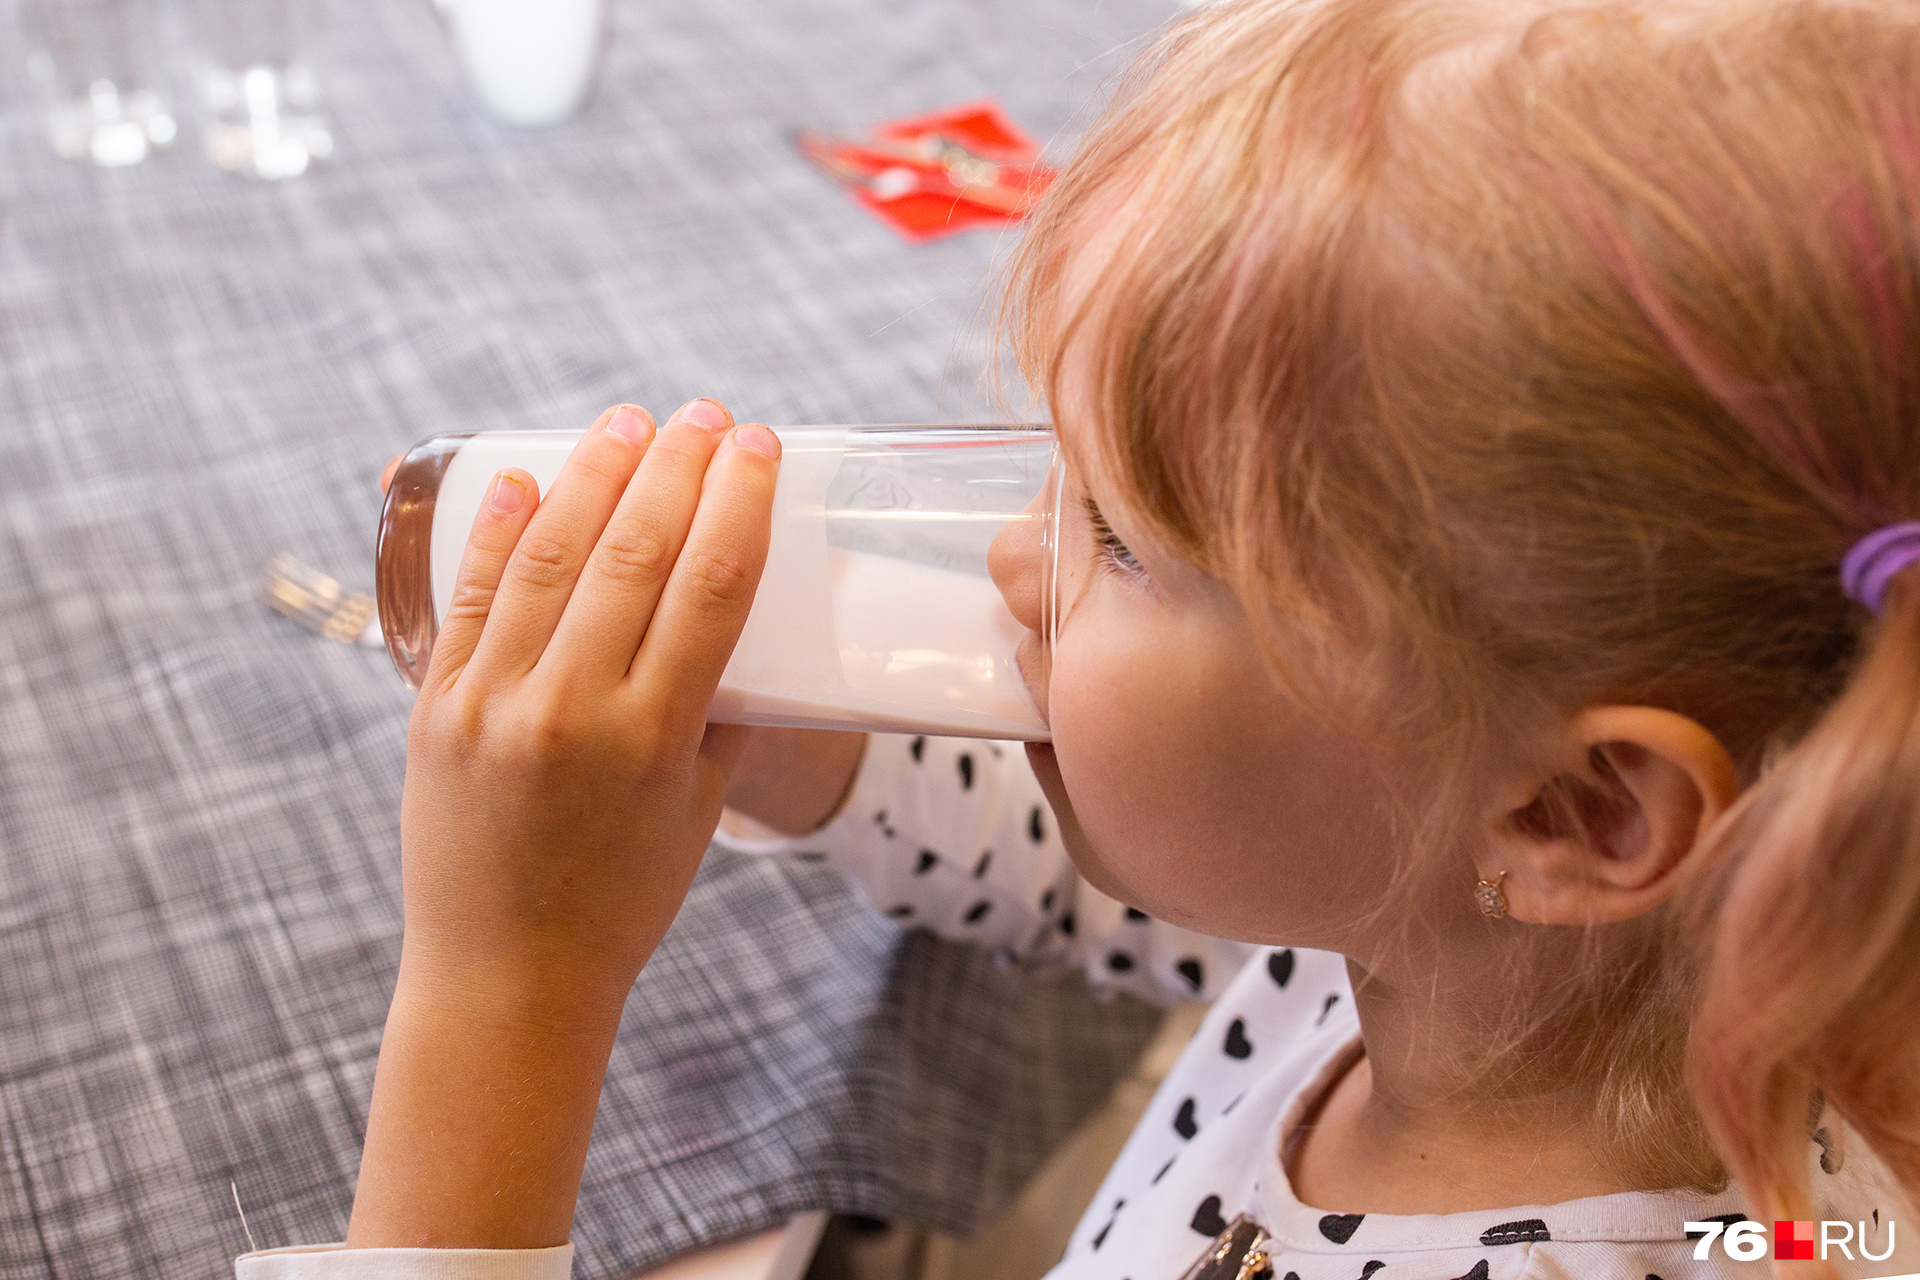 Детям молоко, безусловно, полезно. Взрослым тоже, просто с возрастом появляются некоторые особенности